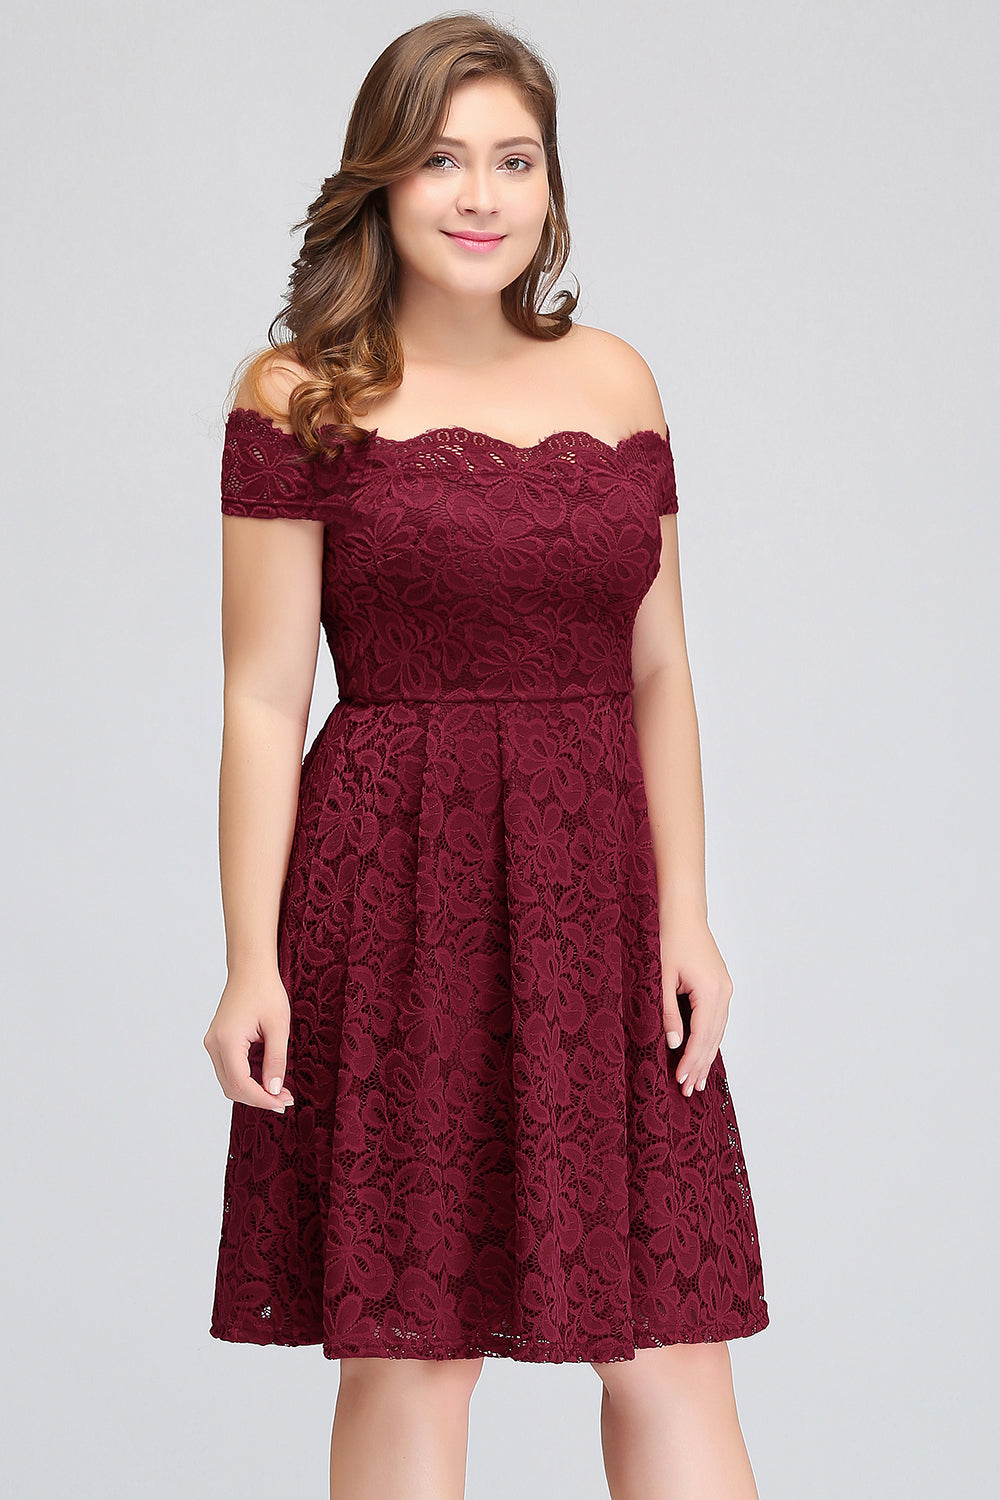 Plus Size Off-the-Shoulder Burgundy Lace Short Bridesmaid Dress Online-27dress